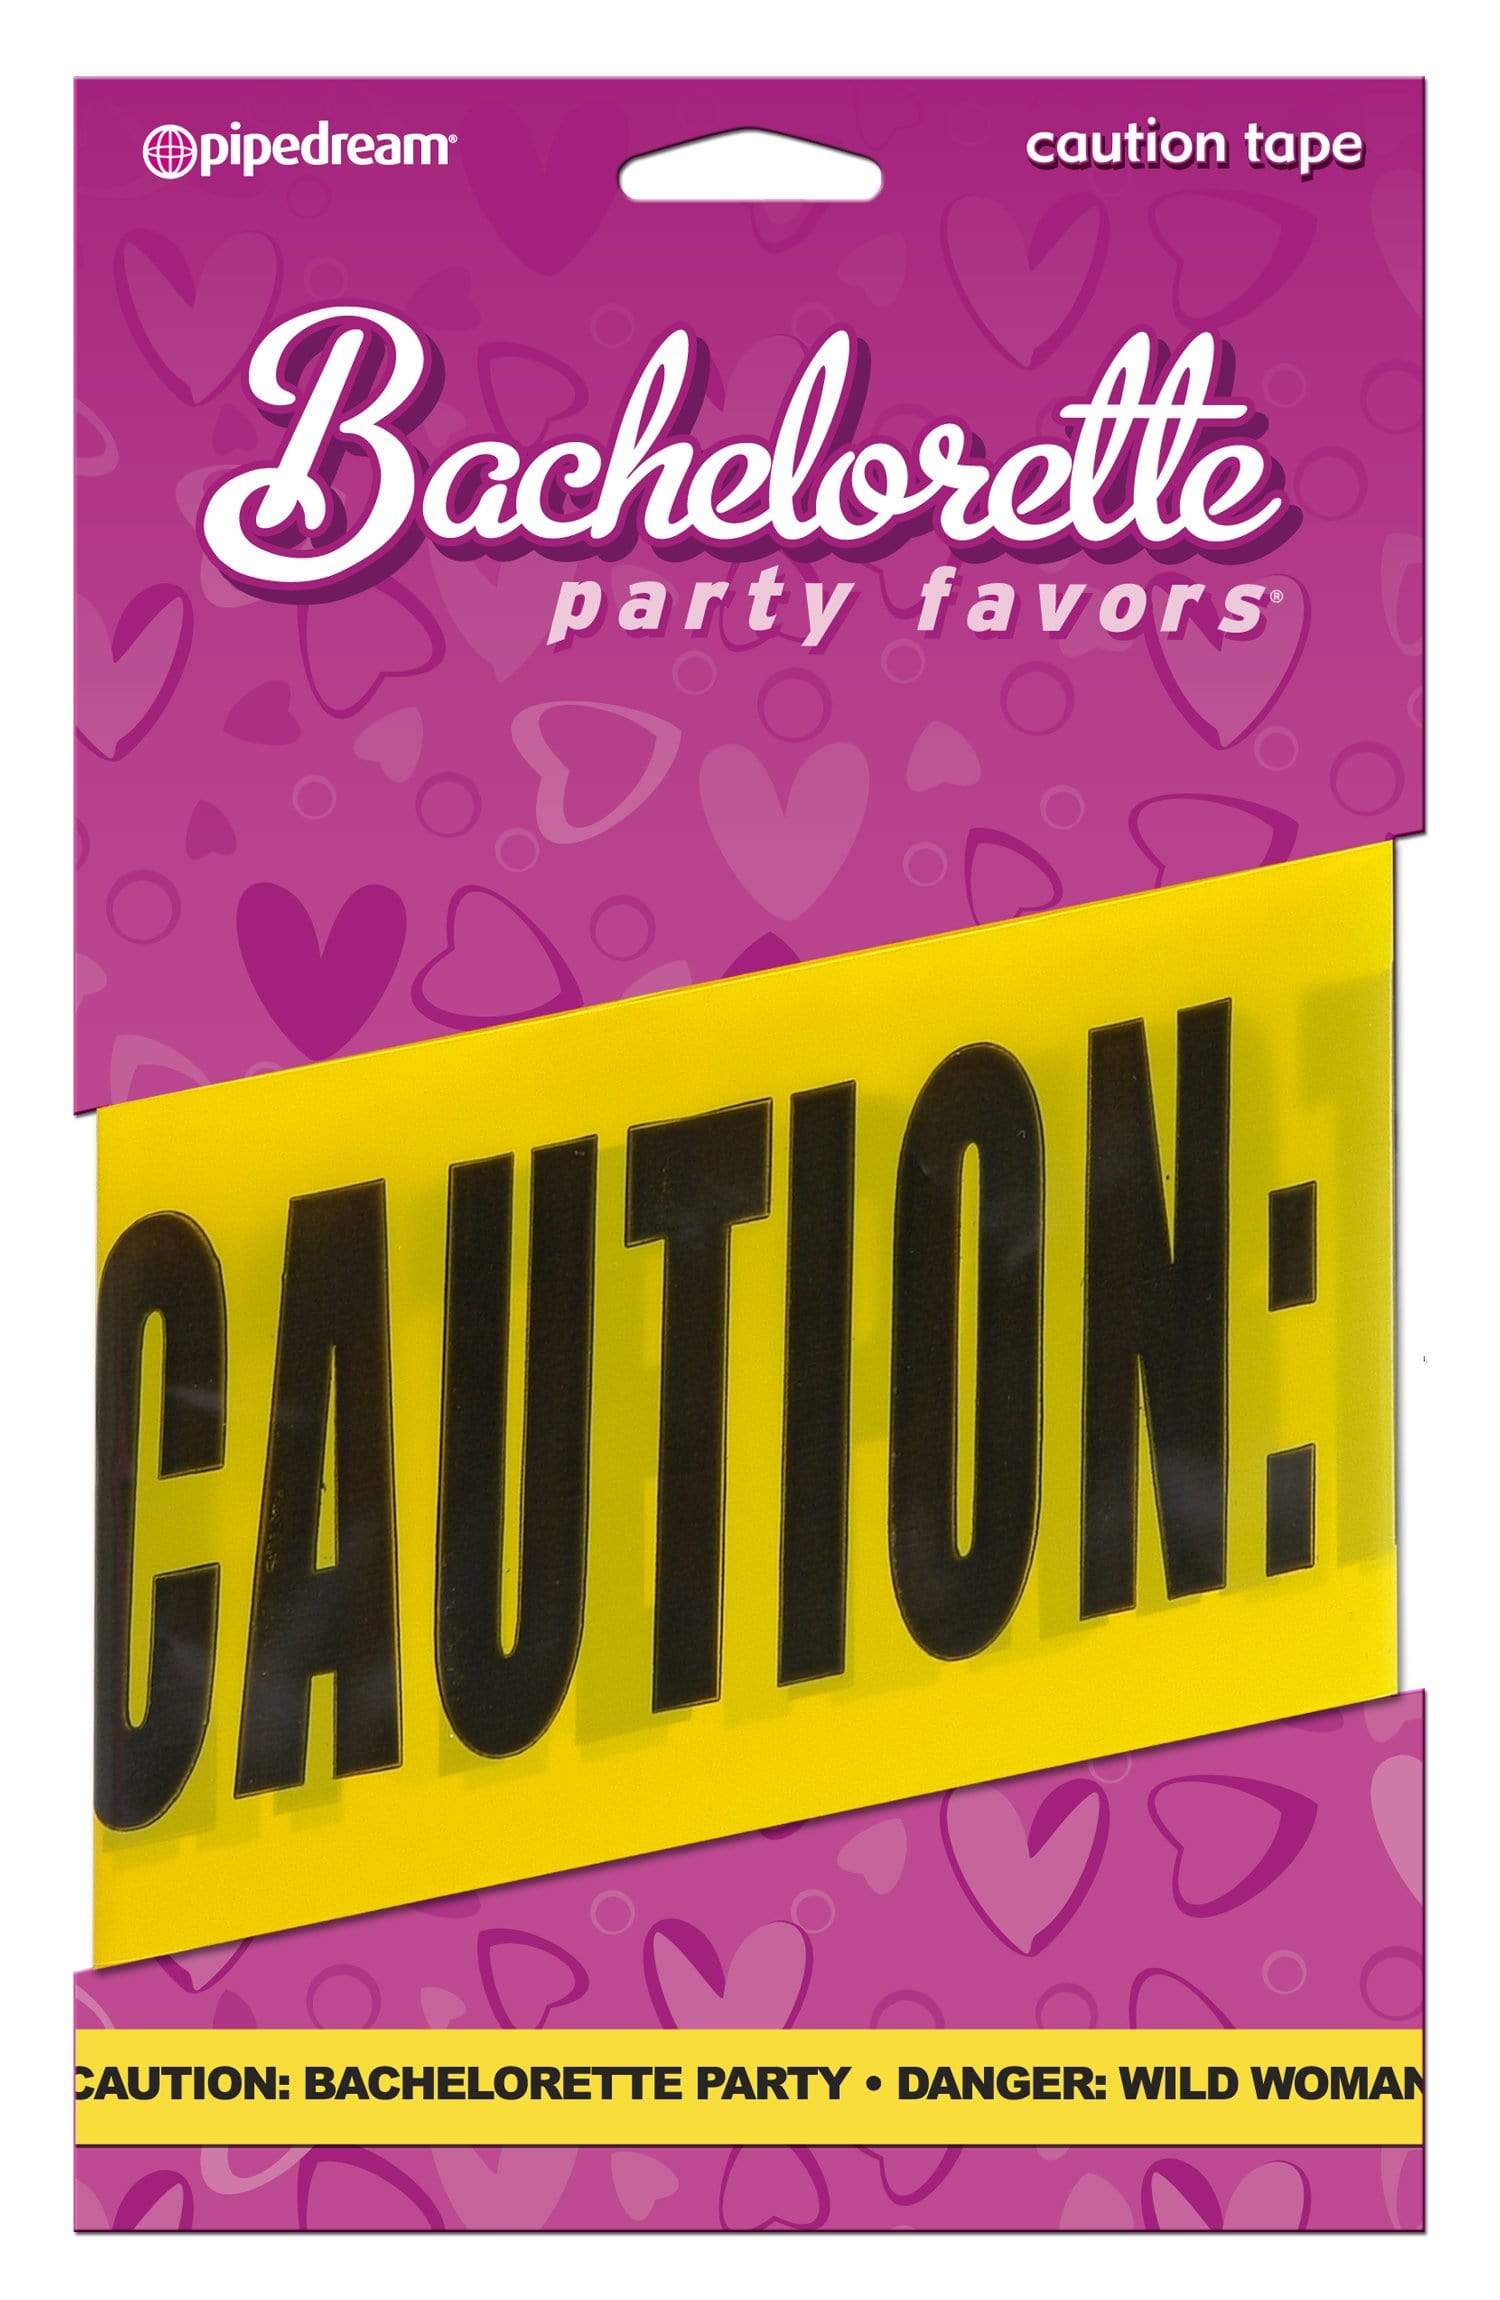 bachelorette party favors caution tape